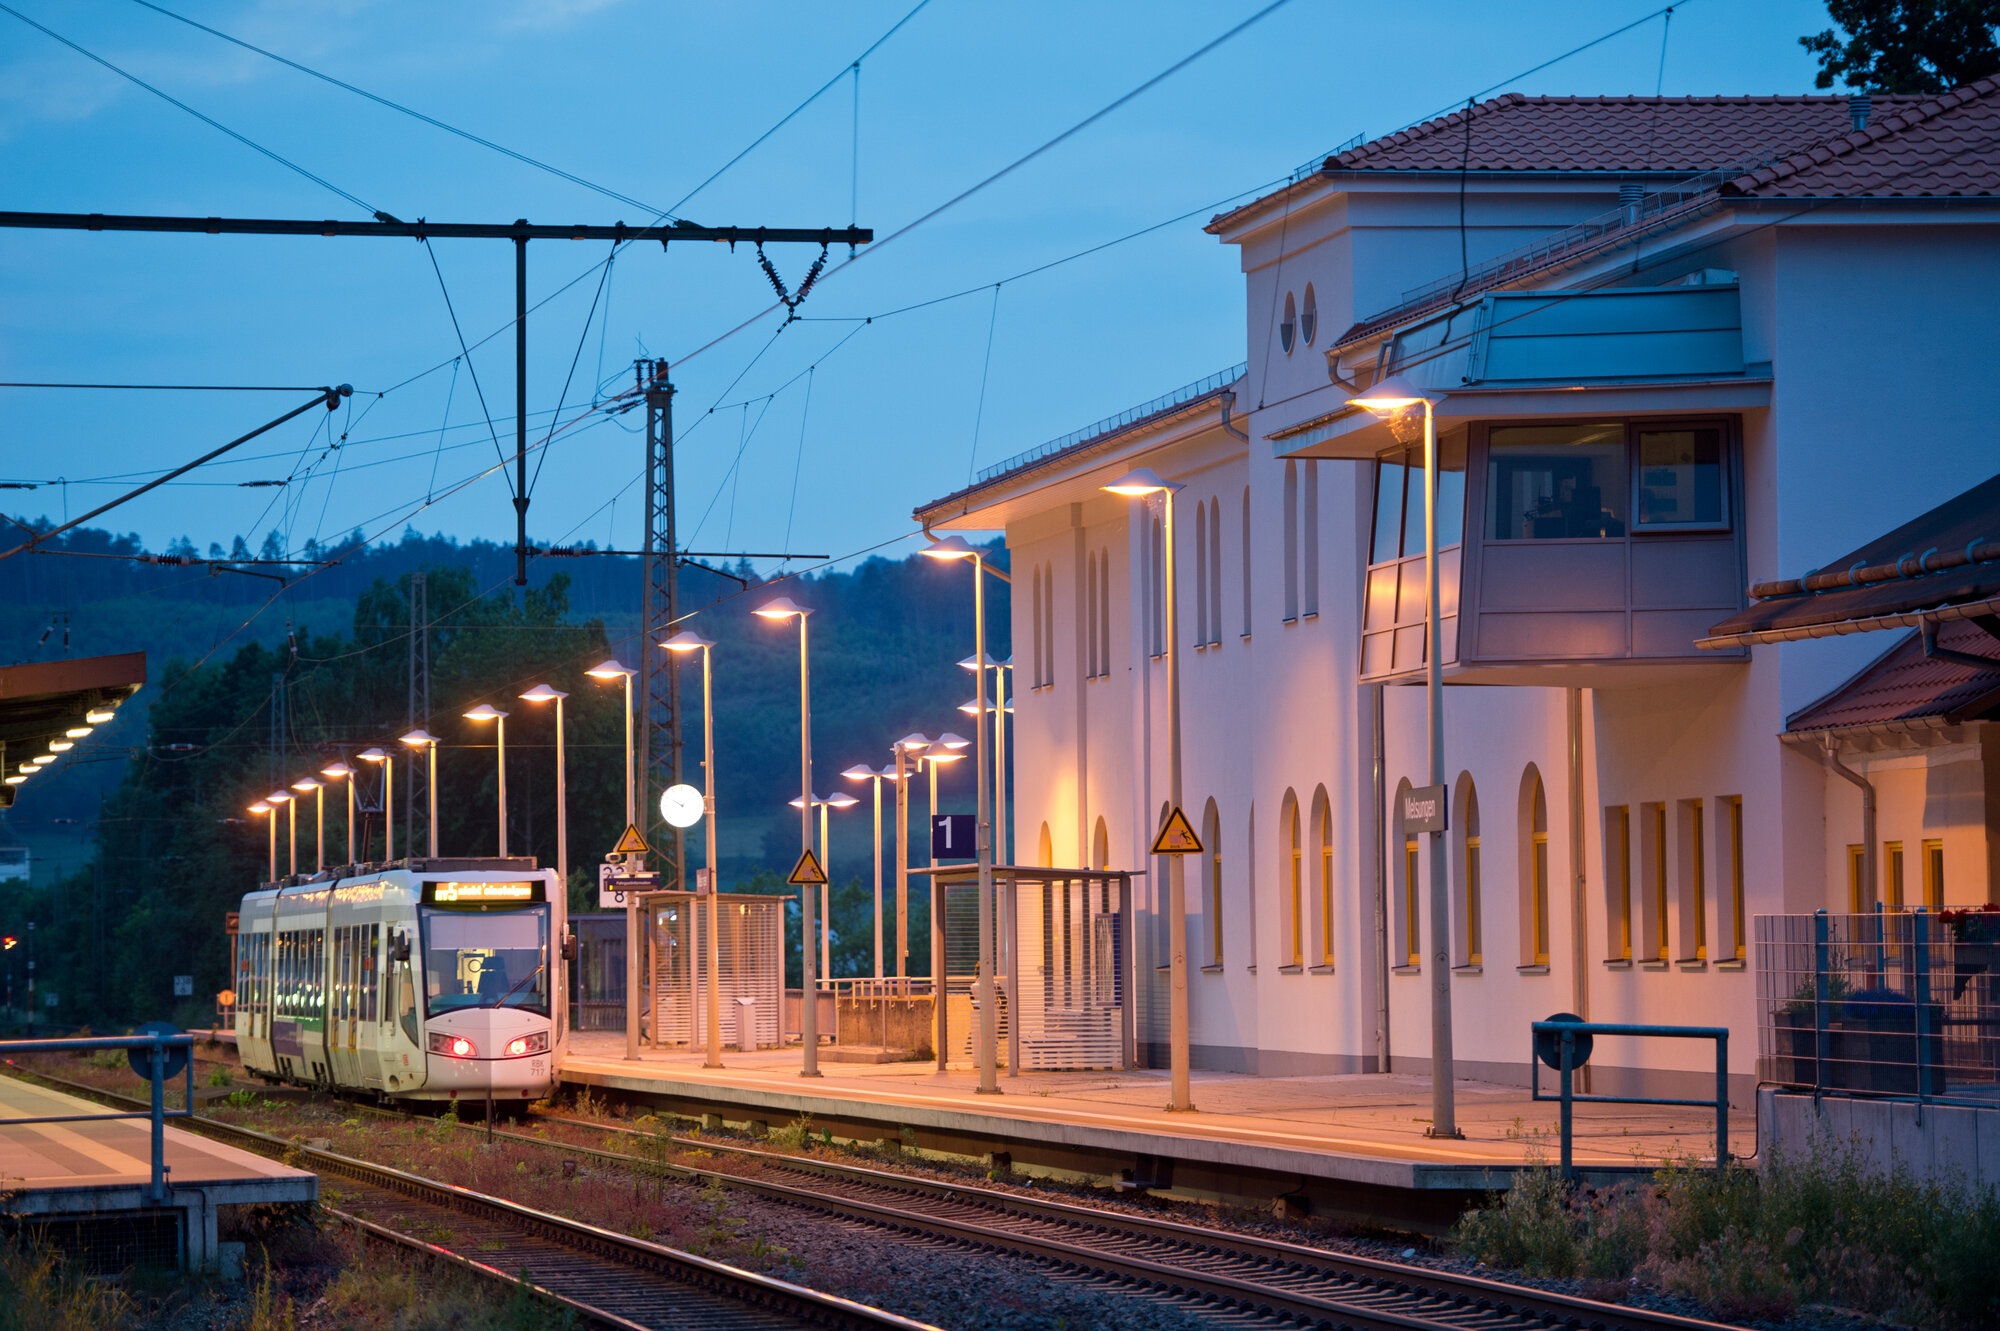 Bahnhof Melsungen bei Nacht